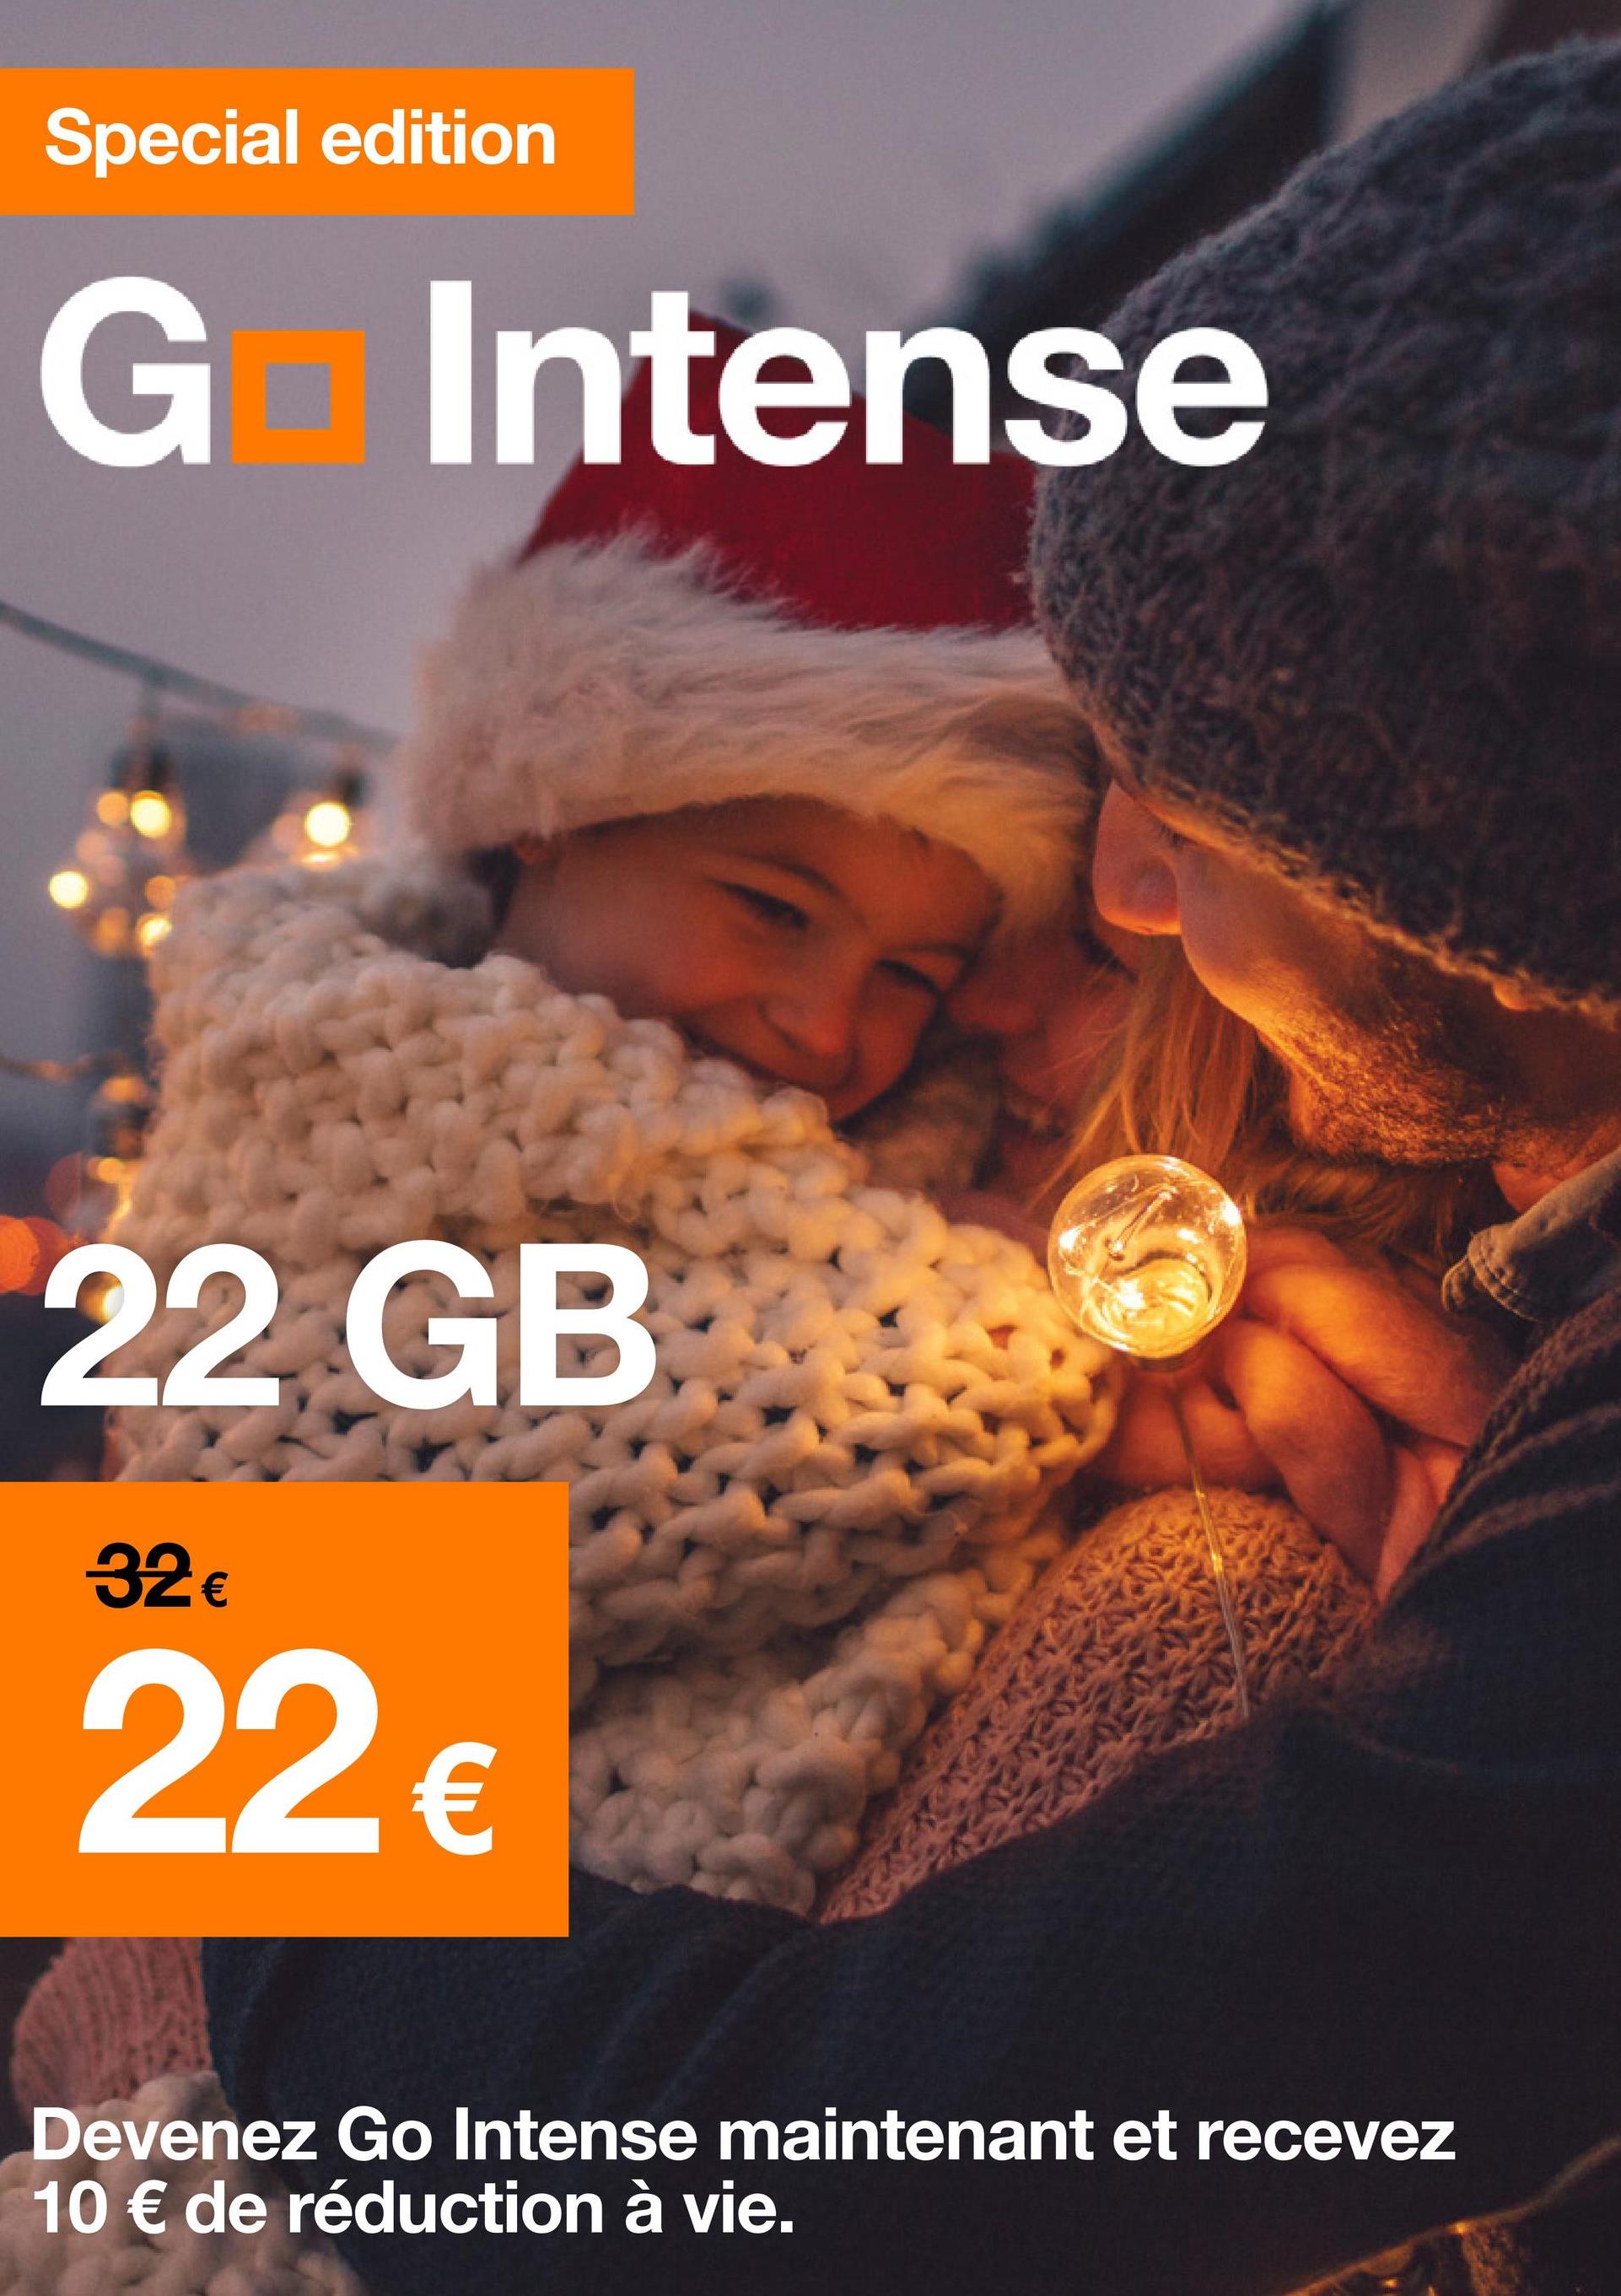 Special edition
Go Intense
22 GB
32 €
22 €
Devenez Go Intense maintenant et recevez
10 € de réduction à vie.